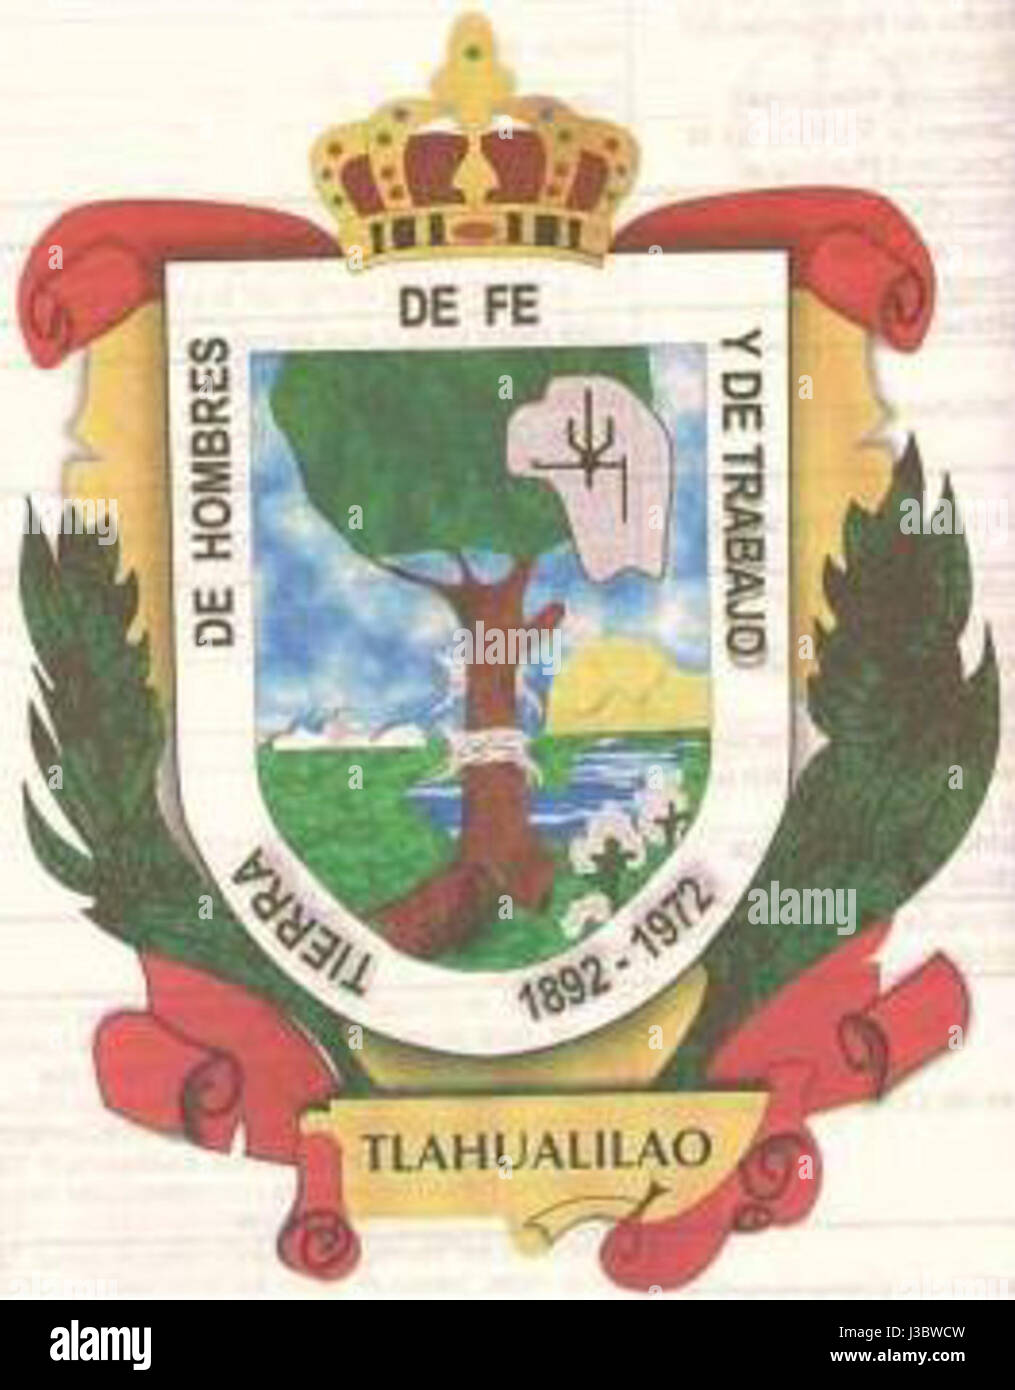 Escudo de armas Tlahualilo Durango Stock Photo